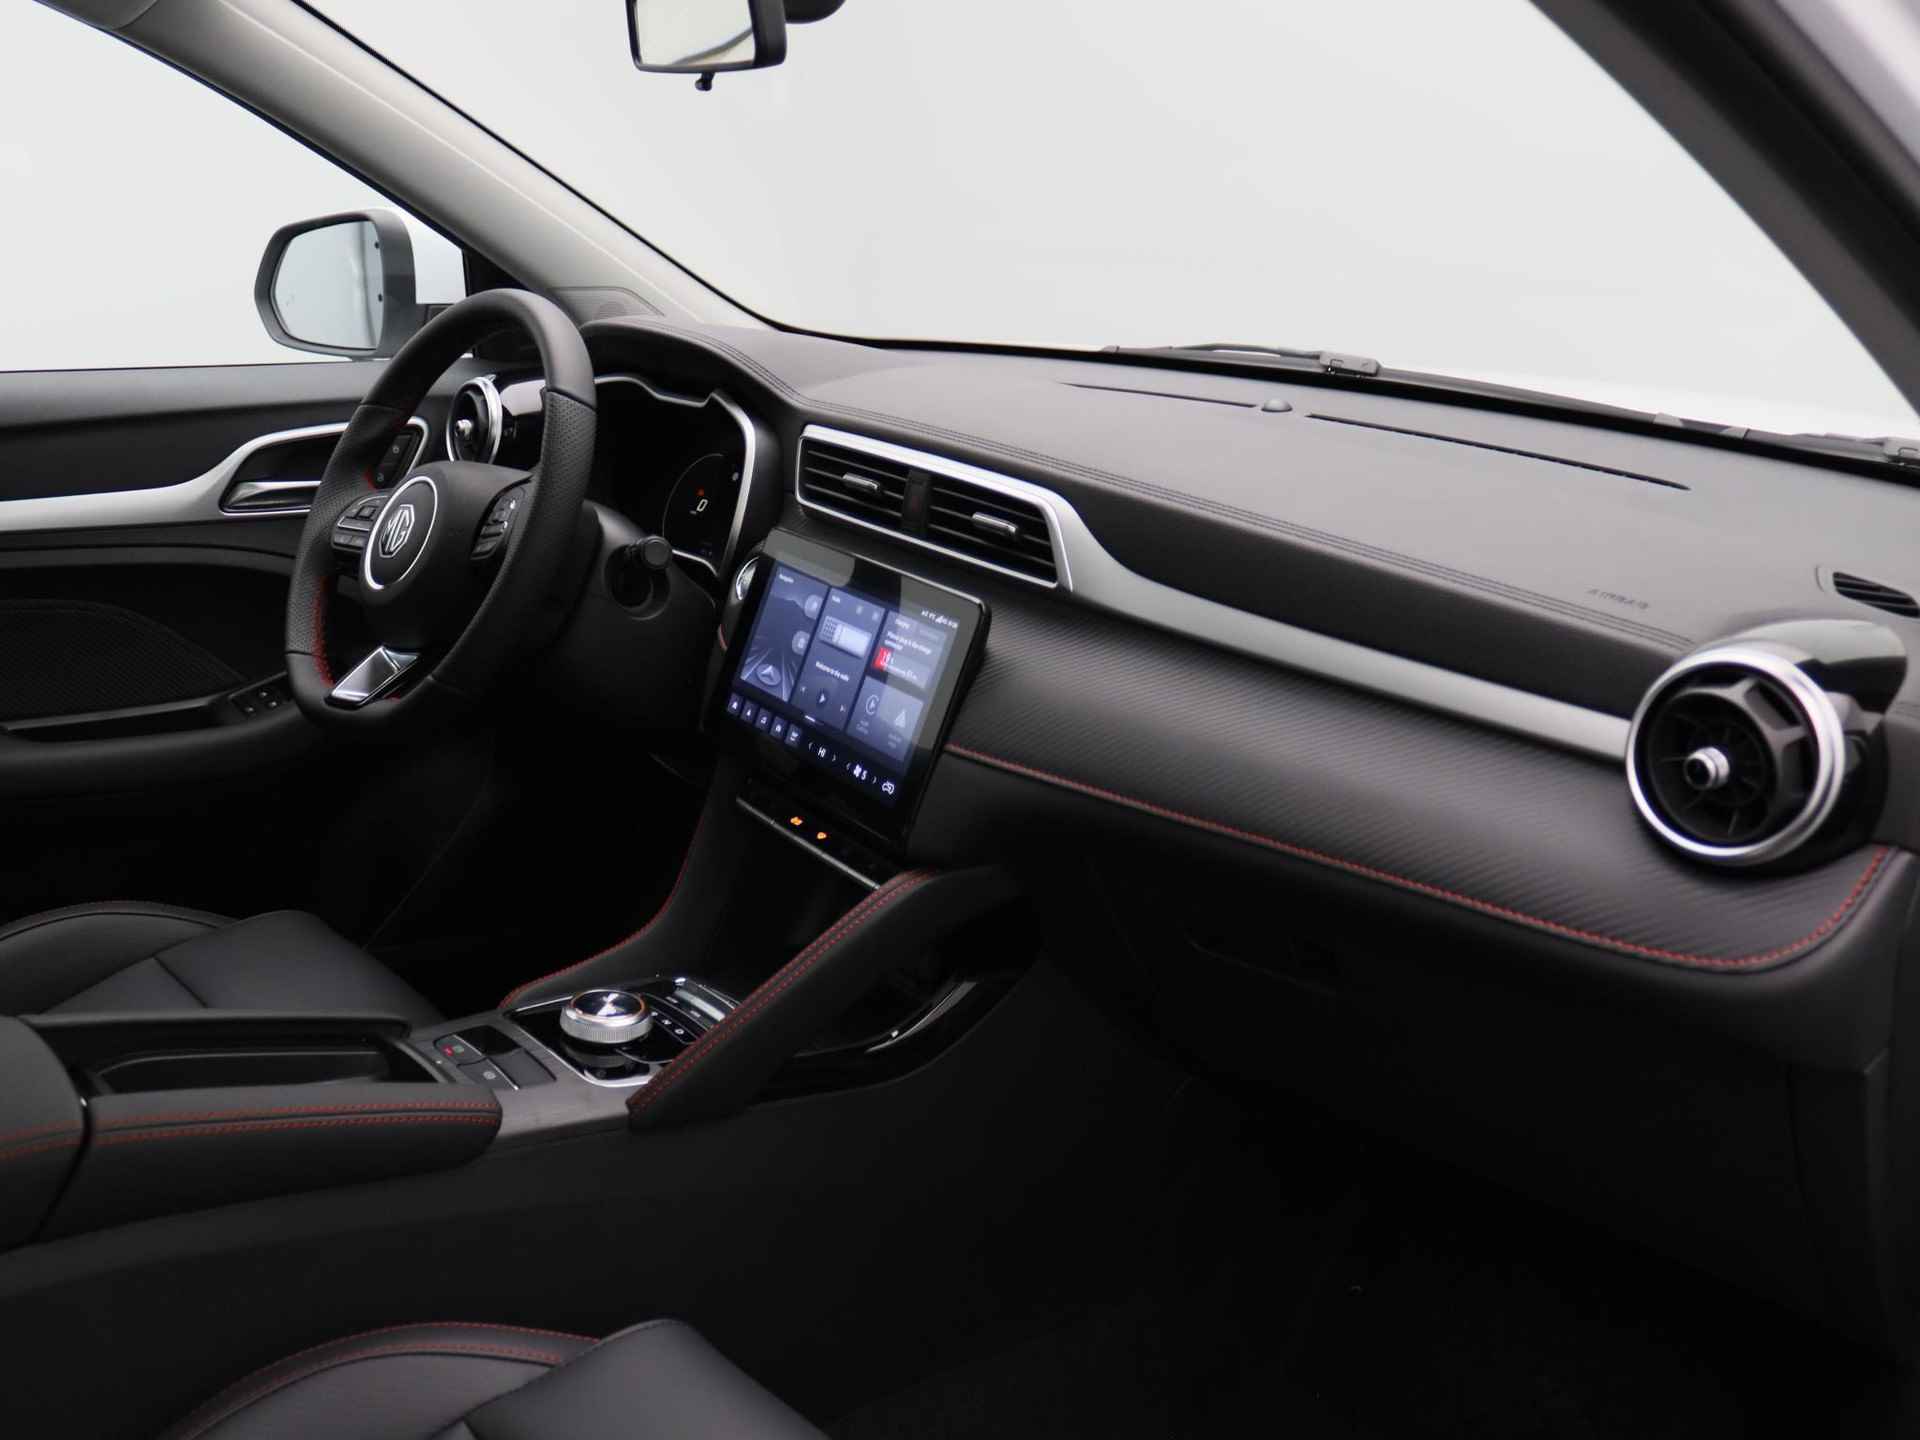 MG ZS EV Standard Range Luxury | 320 km WLTP | Navigatie | Panorama dak | 7 jaar 150.000 km garantie | Nu €2500,- Upgrade Actie Voordeel! | Wordt in alle kleuren verwacht! - 7/19